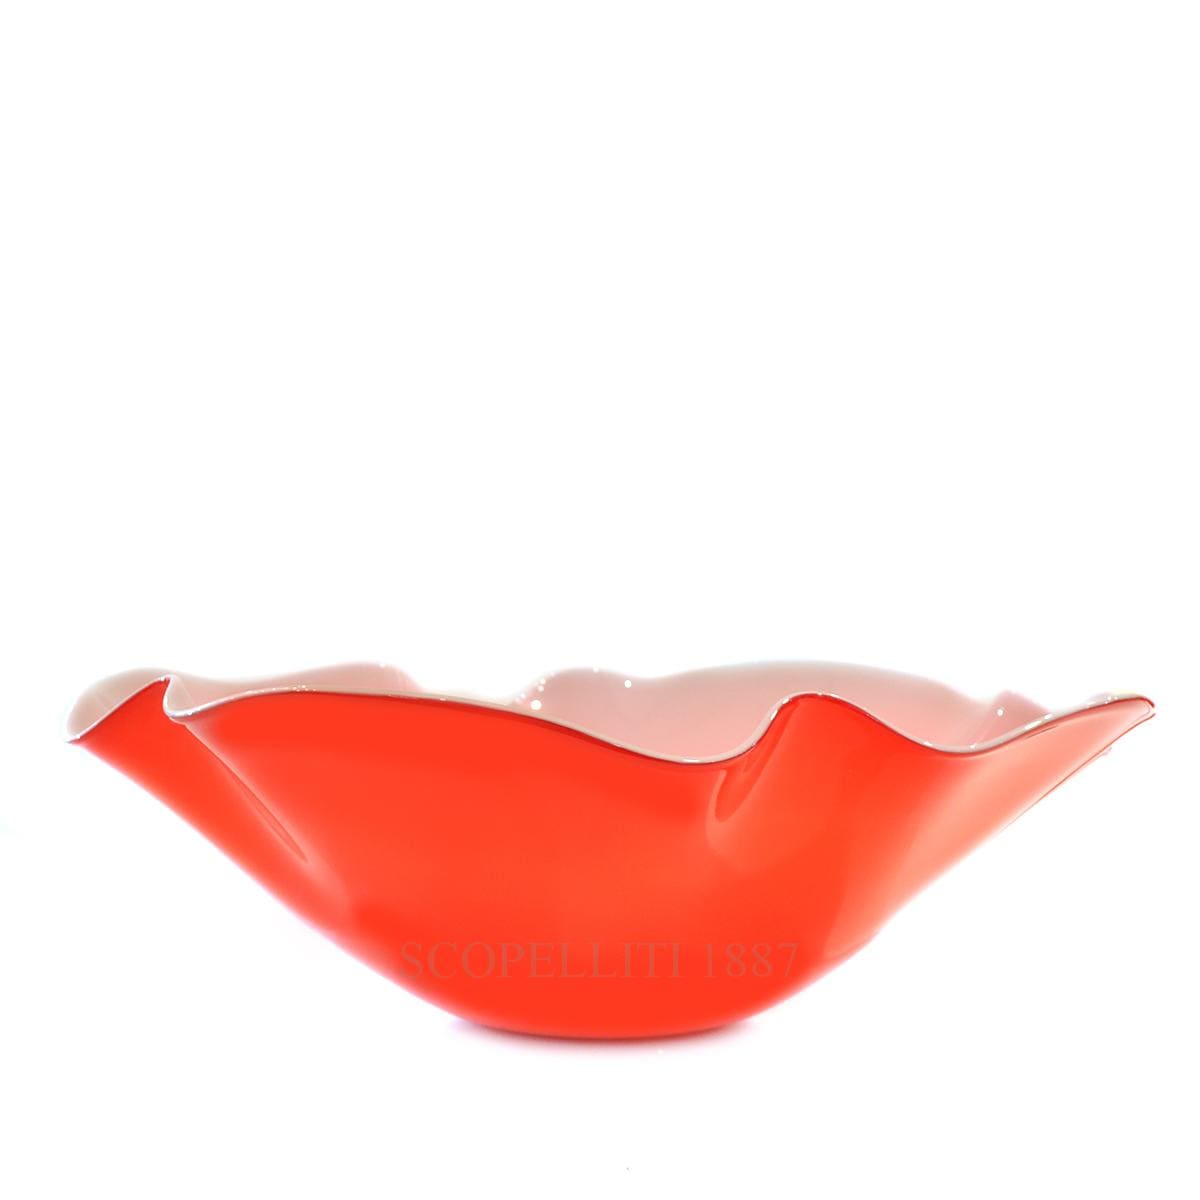 venini italian designer murano glass red narciso large bowl